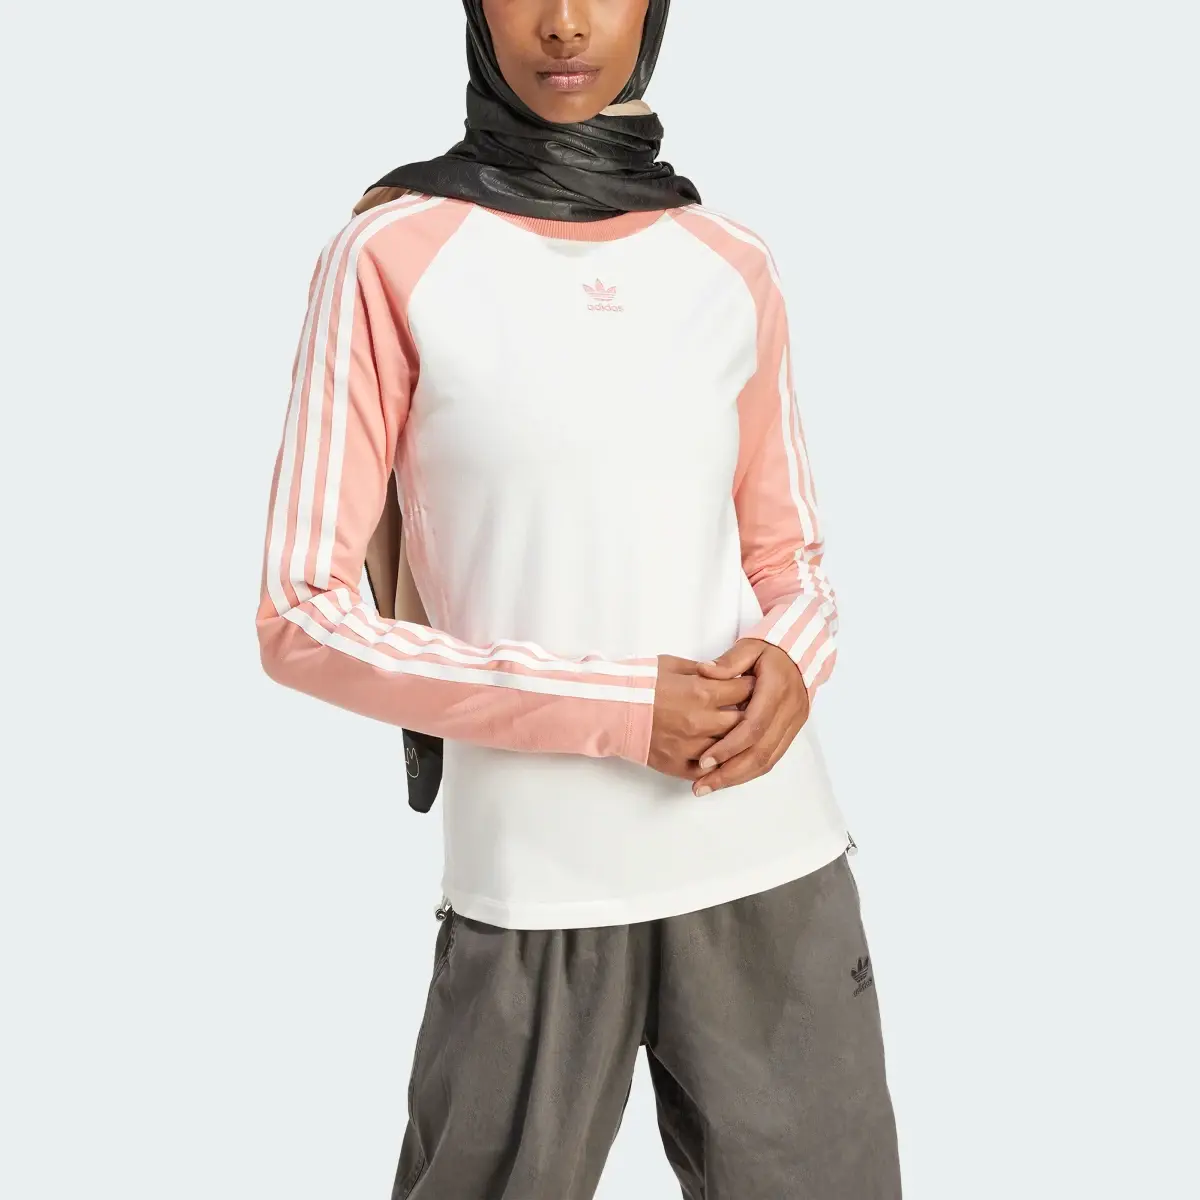 Adidas Slim Fit Long Sleeve Long-Sleeve Top. 1